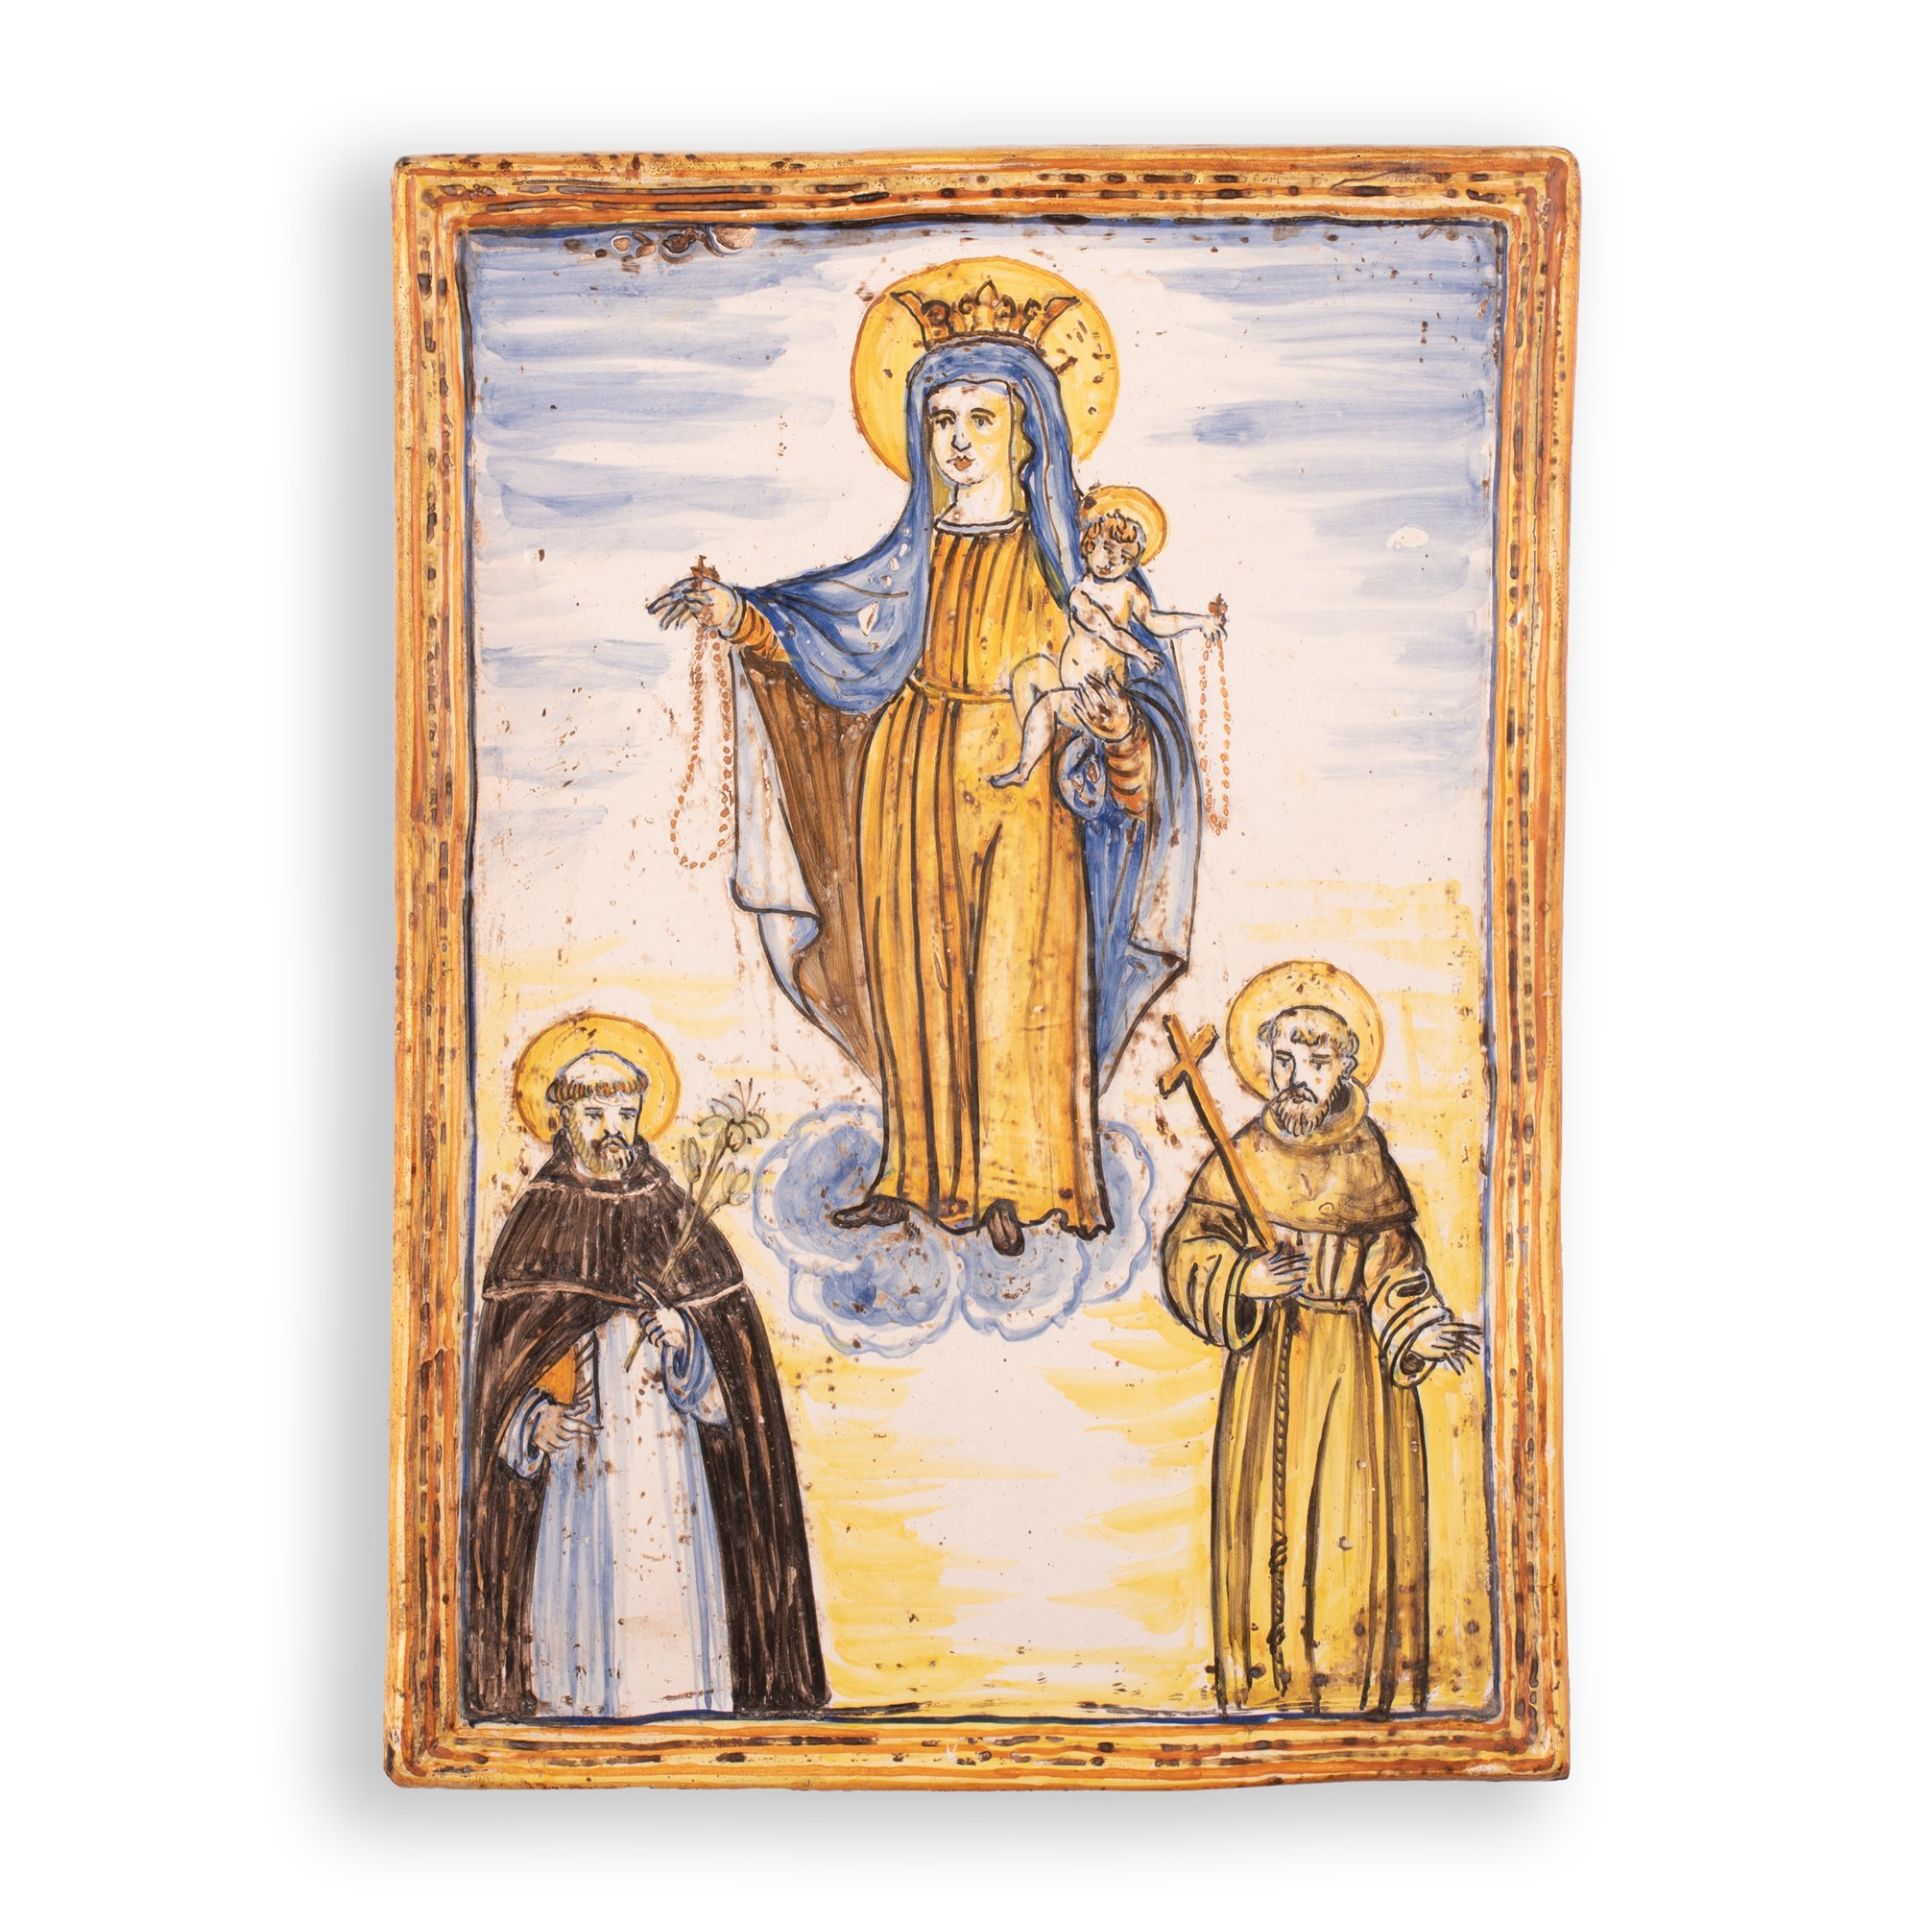 Placca devozionale in maiolica policroma con la rappresentazione della Madonna del Rosario con il Ba